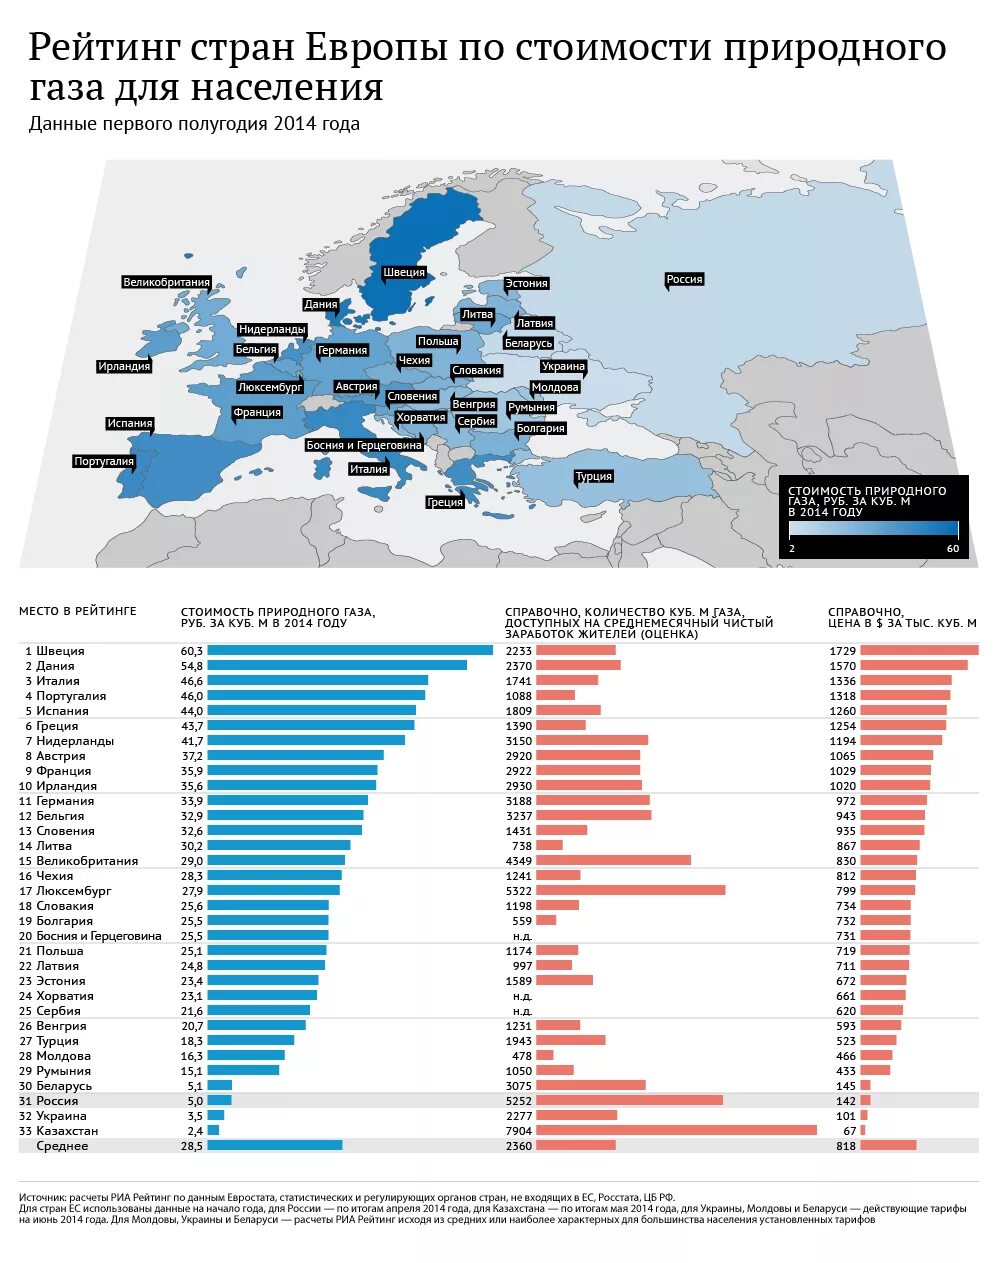 Сколько рублей за газ. Сколько стоит ГАЗ В Европе. ГАЗ В Европе за 1 куб. Рейтинг европейских стран по стоимости газа. Стоимость газа для европейских стран.